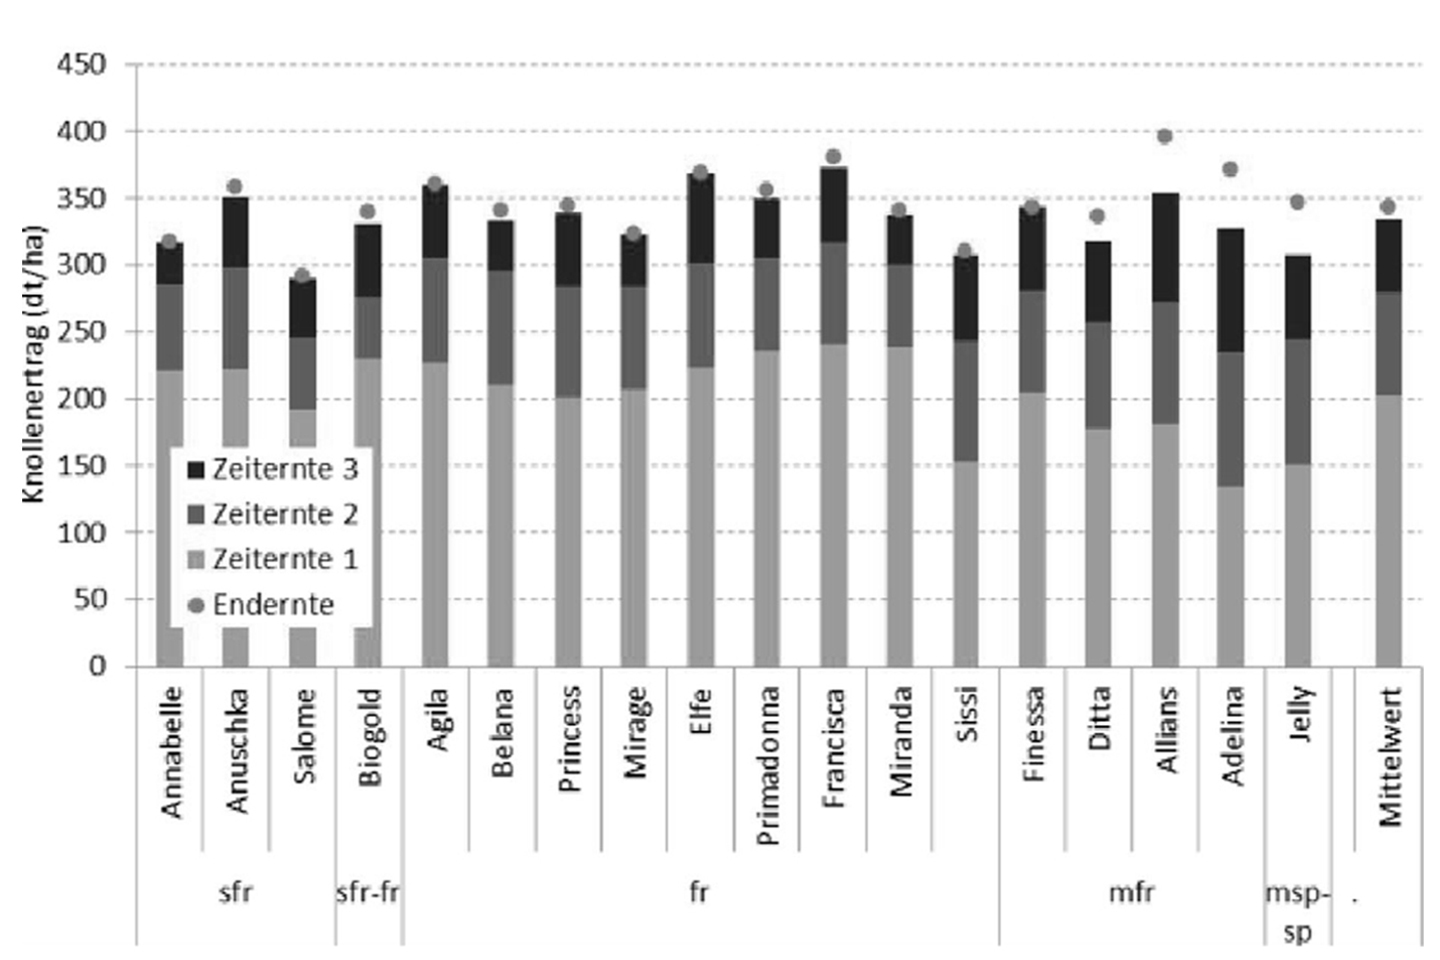 Grafik zu Knollenerträgen (Dezitonnen pro Hektar) dreier Zeiternten und der Endernte (2010 – 2012)